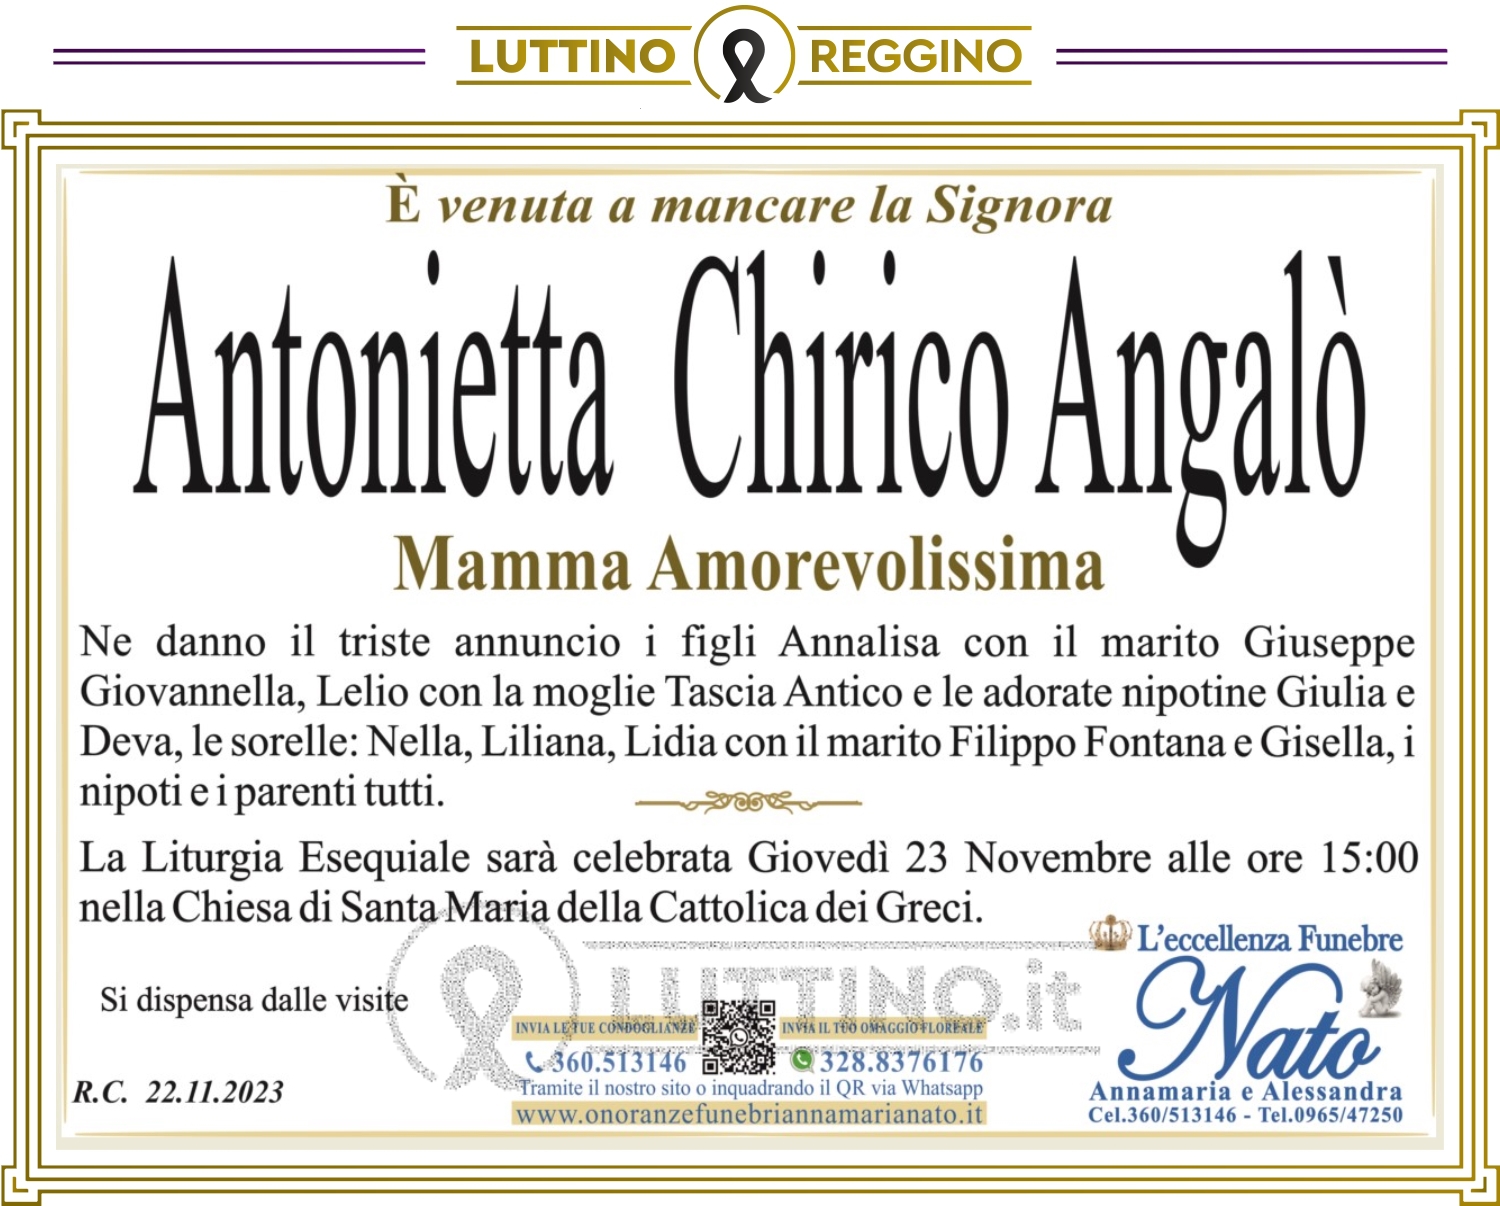 Antonietta Chirico Angalò